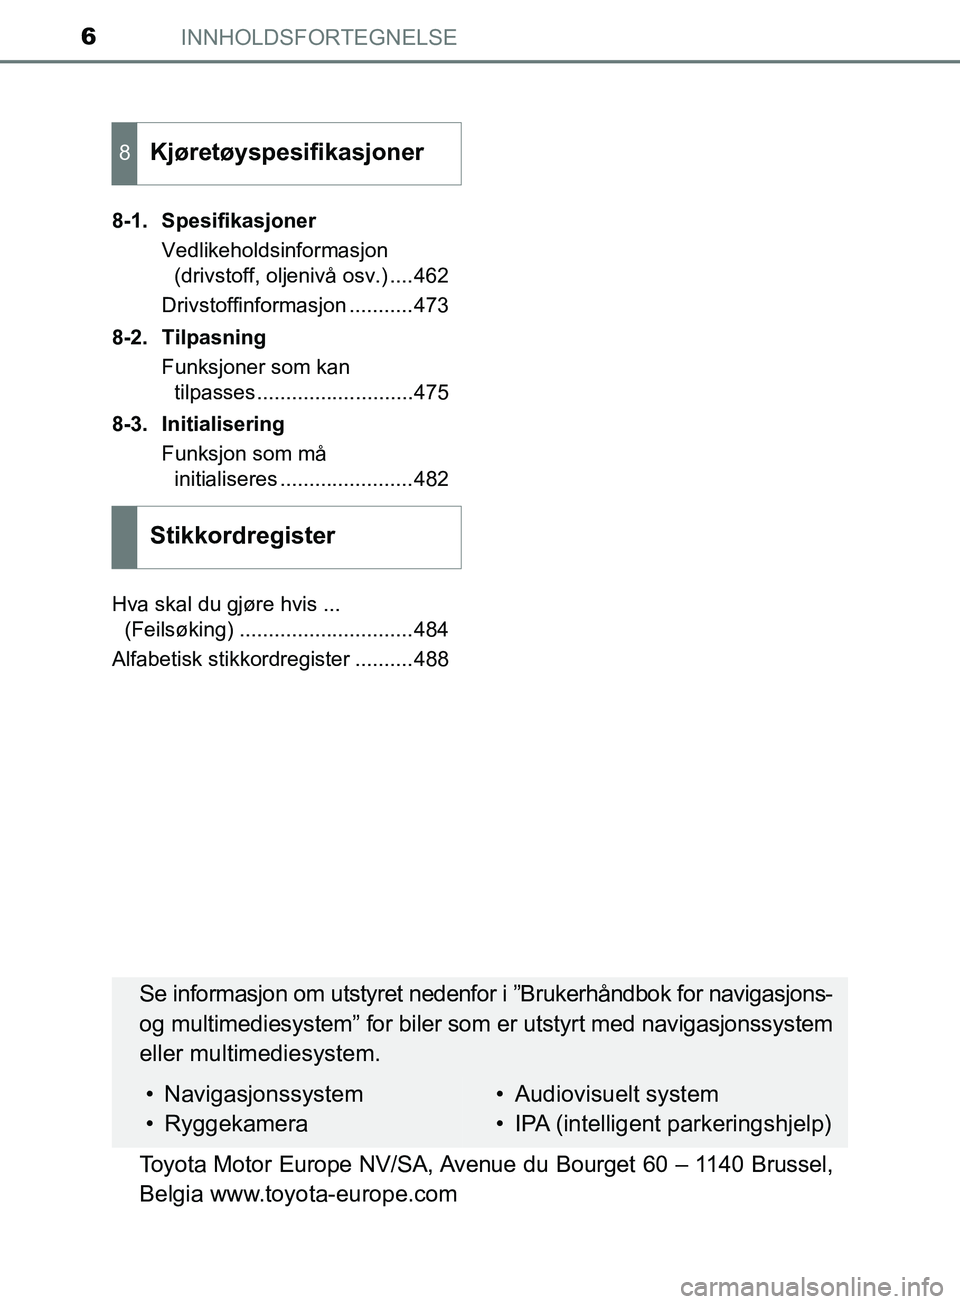 TOYOTA PRIUS PLUS 2019  Instruksjoner for bruk (in Norwegian) INNHOLDSFORTEGNELSE6
OM47D30NO8-1. Spesifikasjoner
Vedlikeholdsinformasjon (drivstoff, oljenivå osv.) ....462
Drivstoffinformasjon ...........473
8-2. Tilpasning Funksjoner som kan tilpasses.........